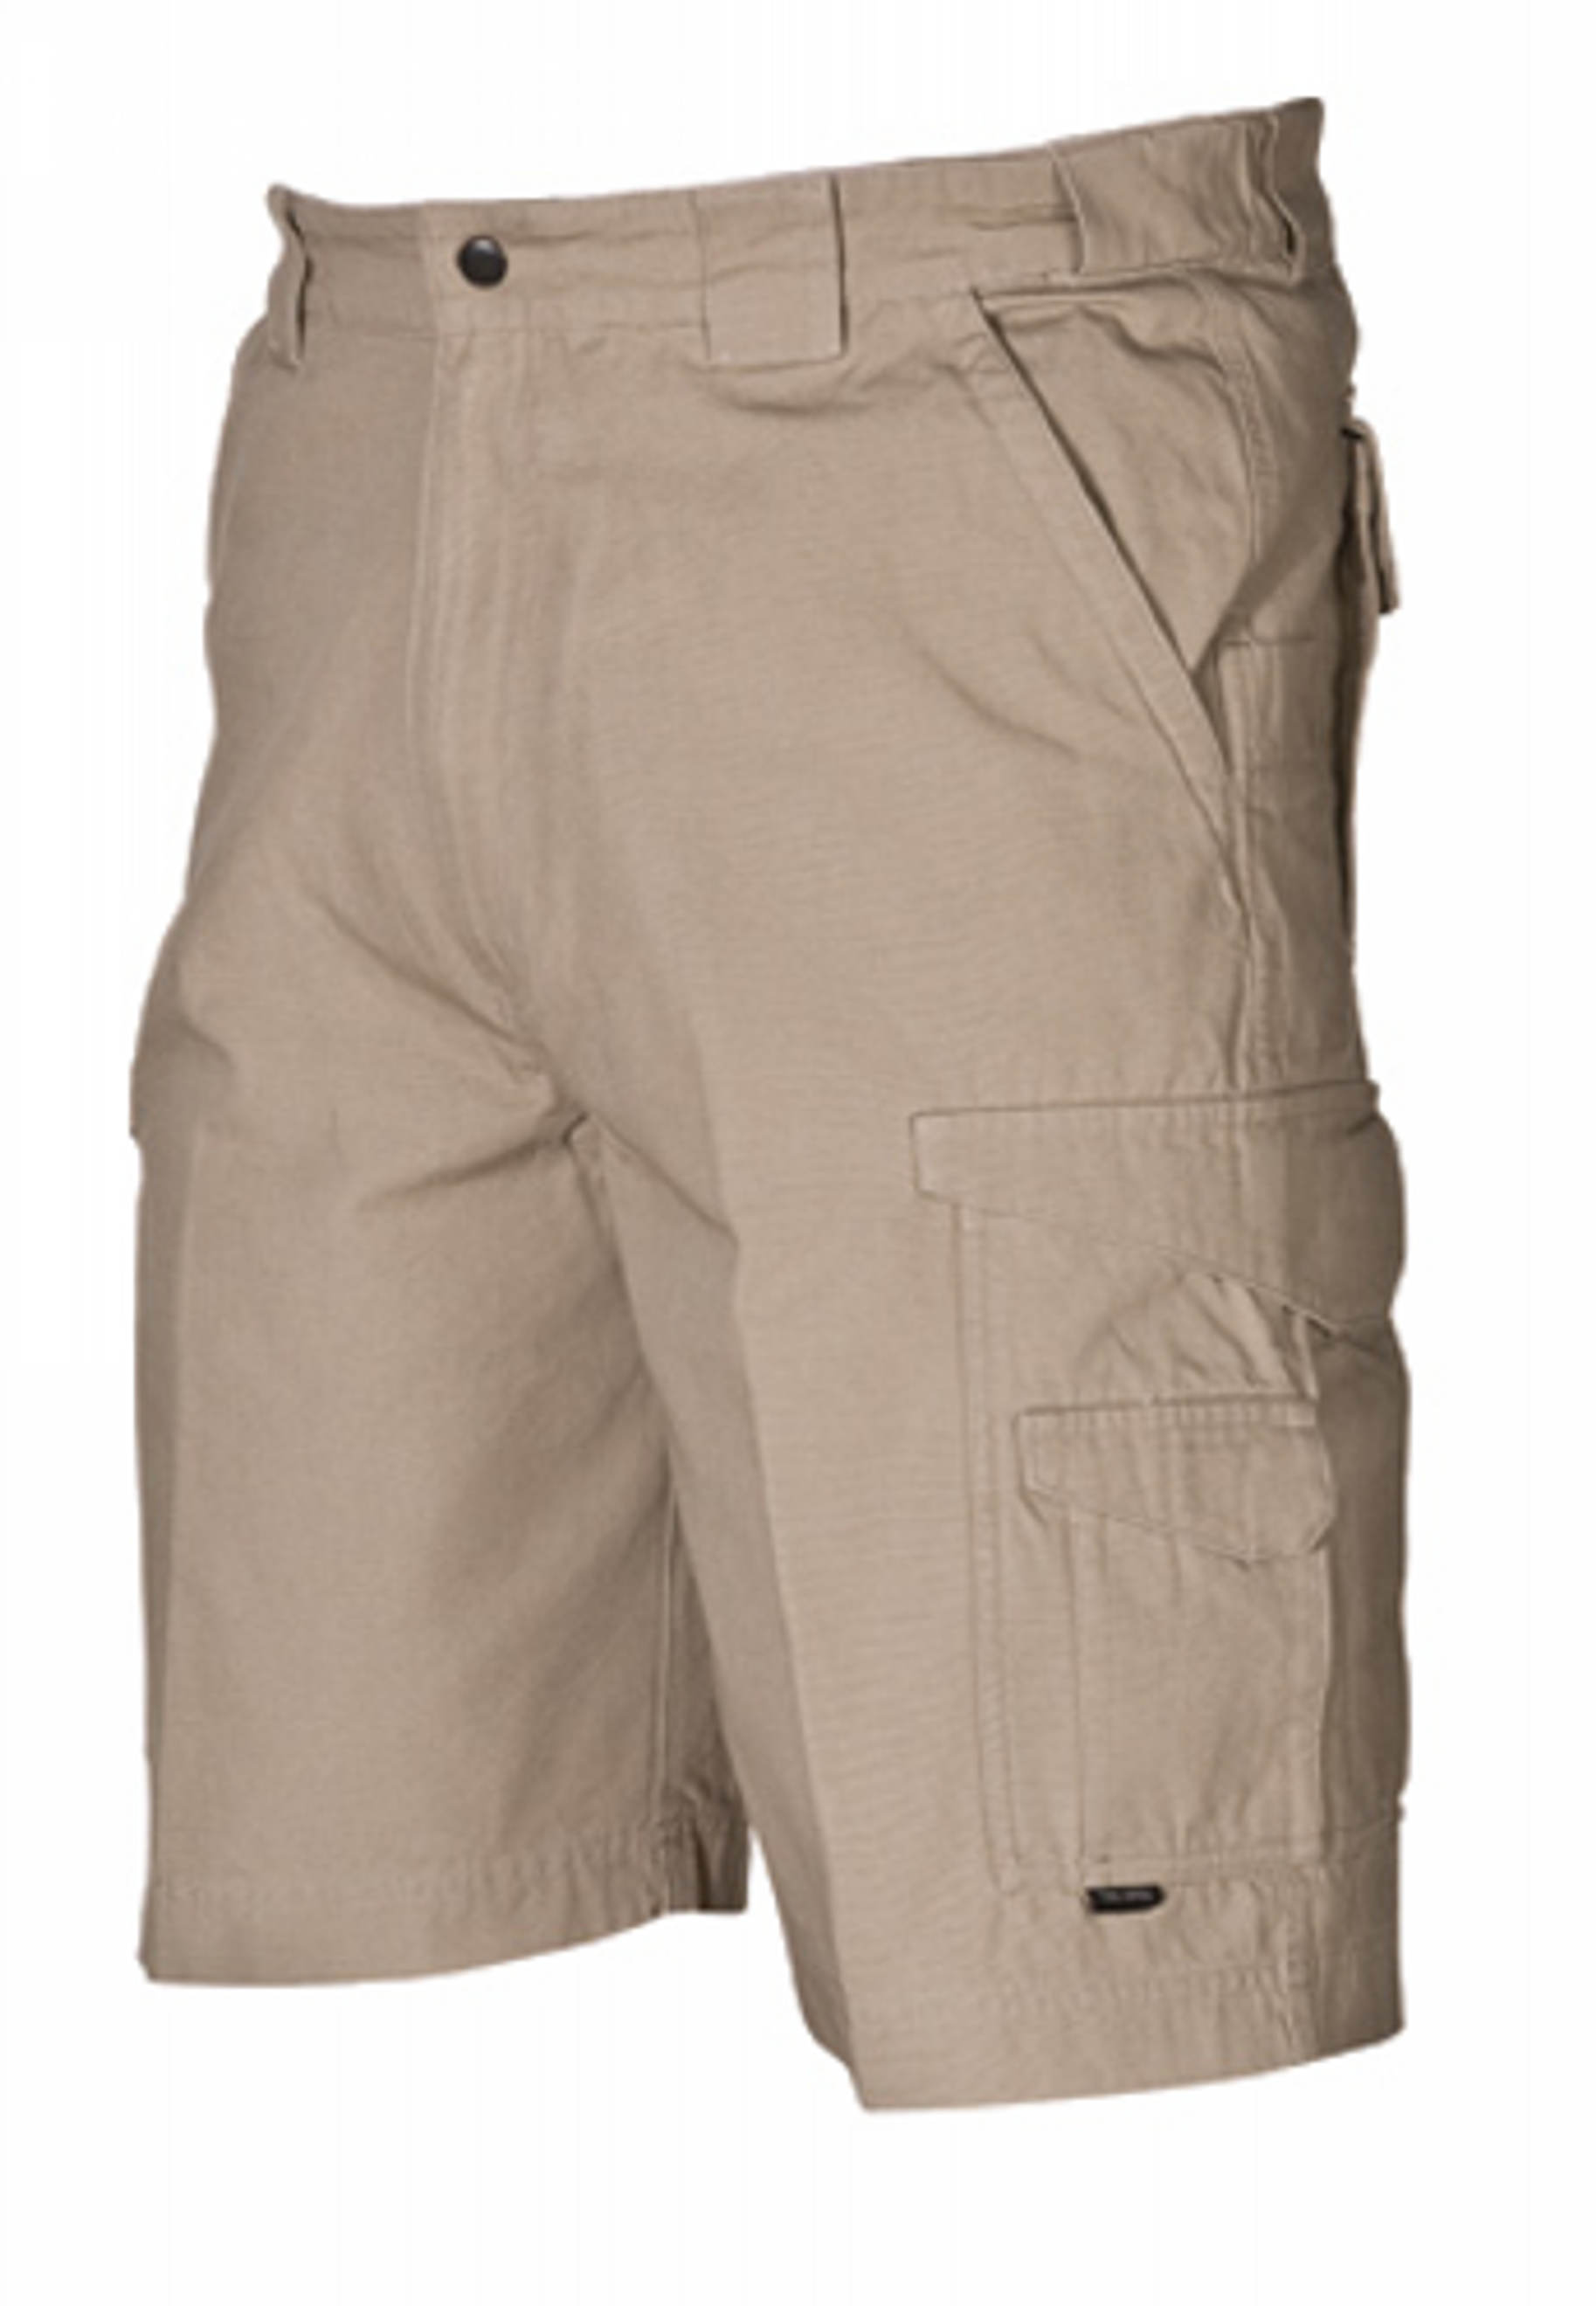 Original Tactical Shorts - KRTSP-4269006